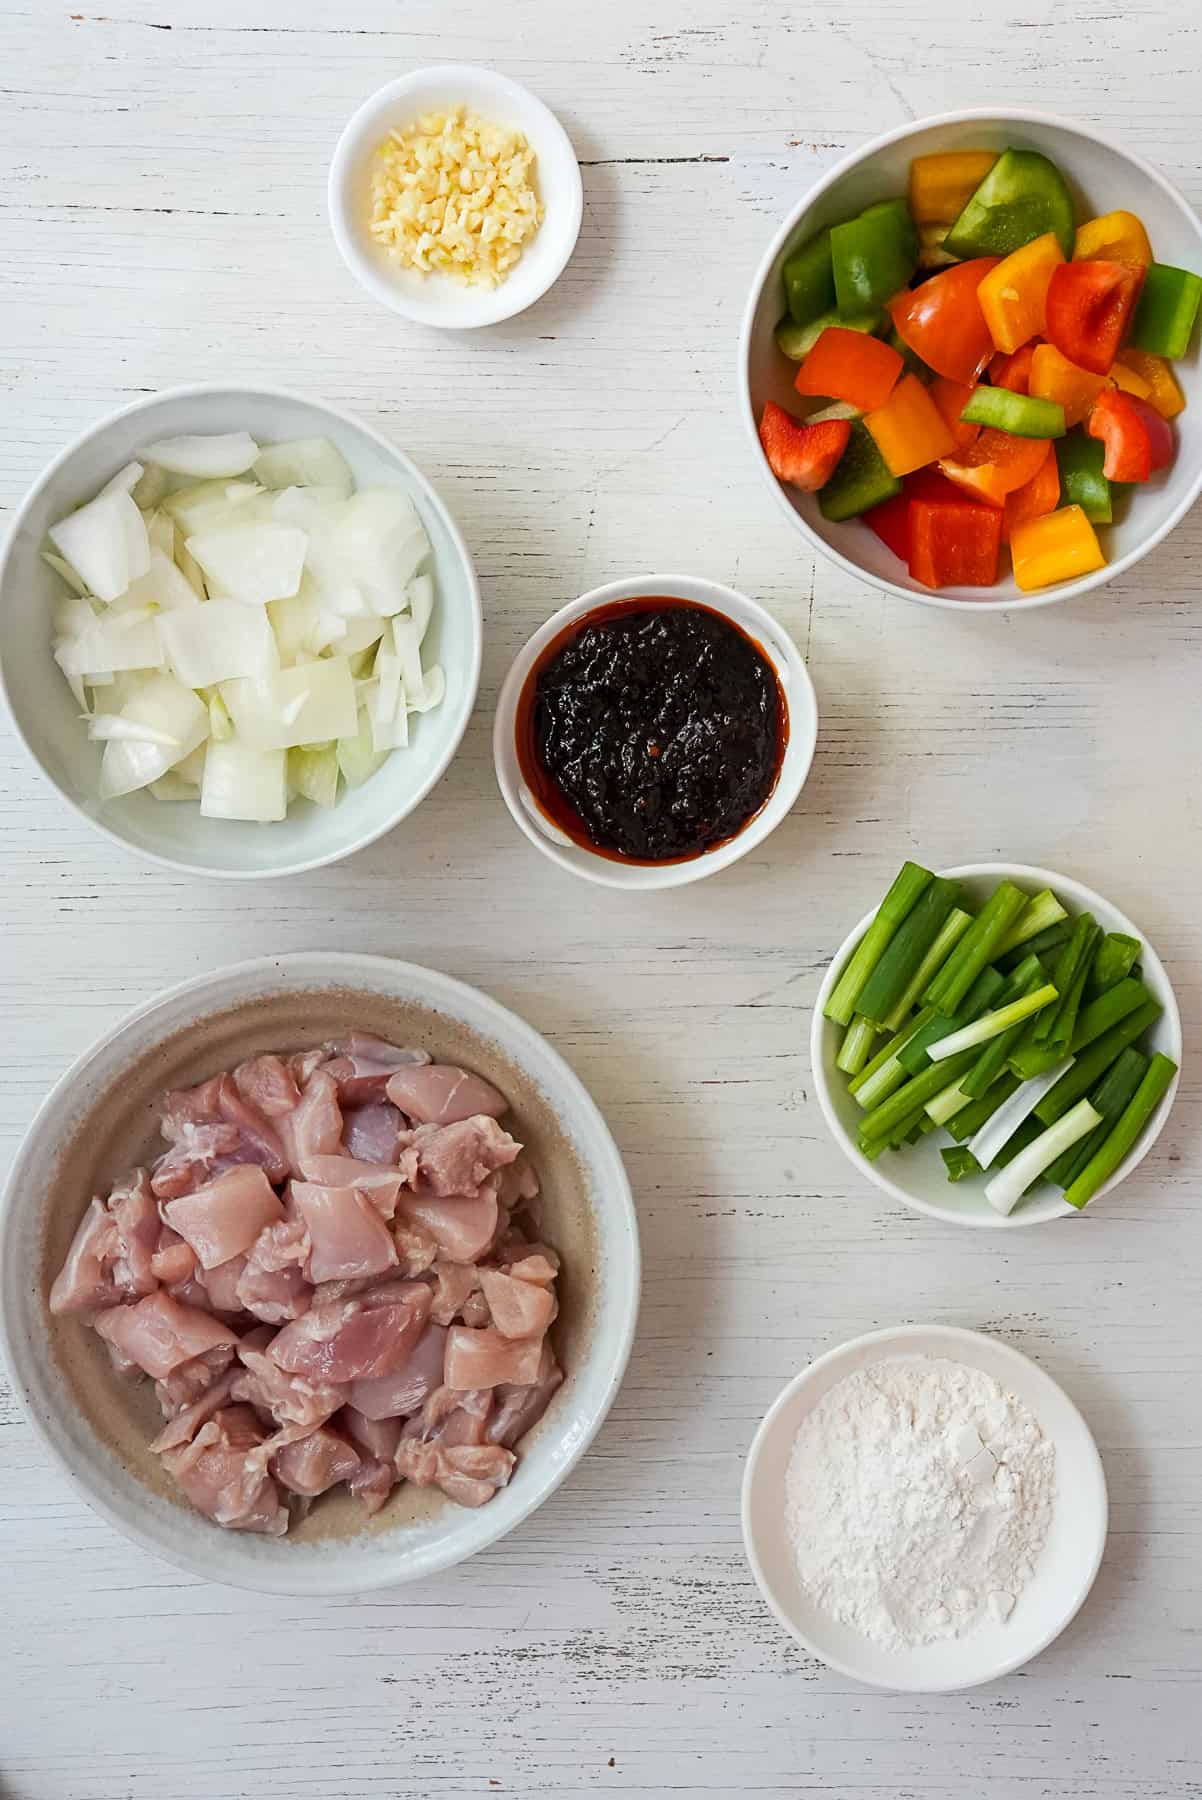 Ingredients for Pad Nam Prik Pao